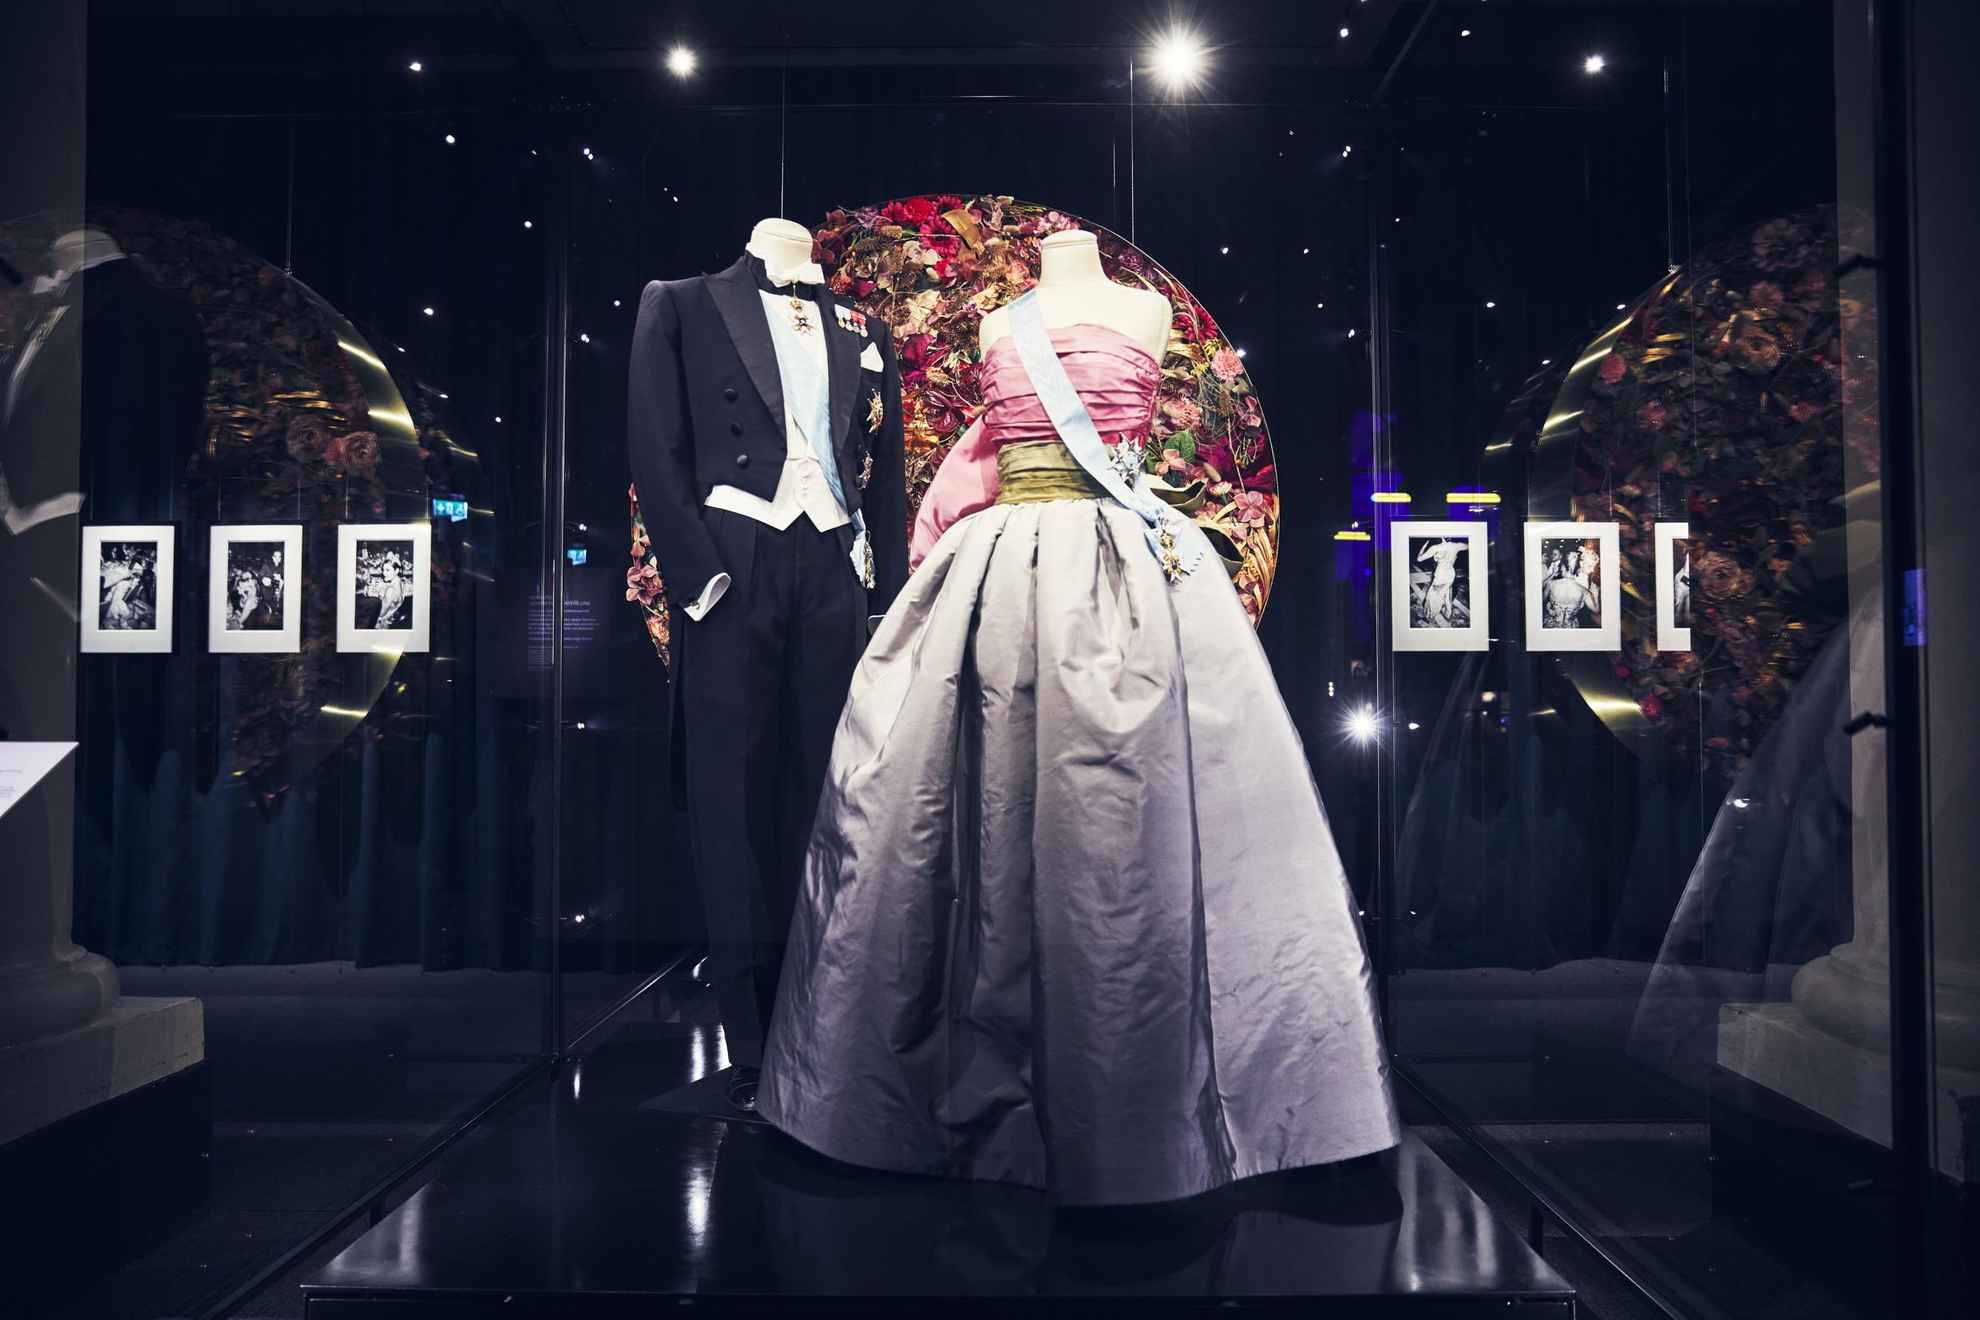 Deux mannequins dans une exposition, l'un vêtu d'un frac et l'autre d'une robe violette et rose. Tous deux portent un ruban bleu.